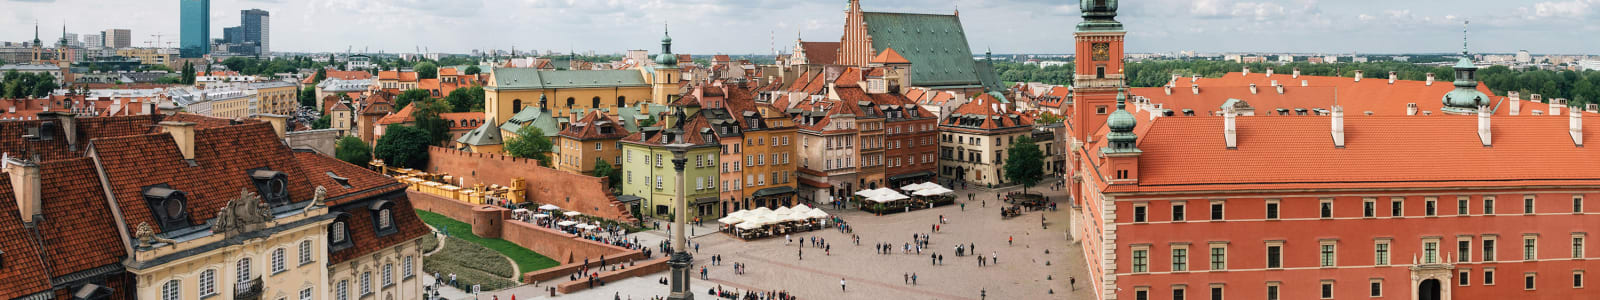 Polish town square